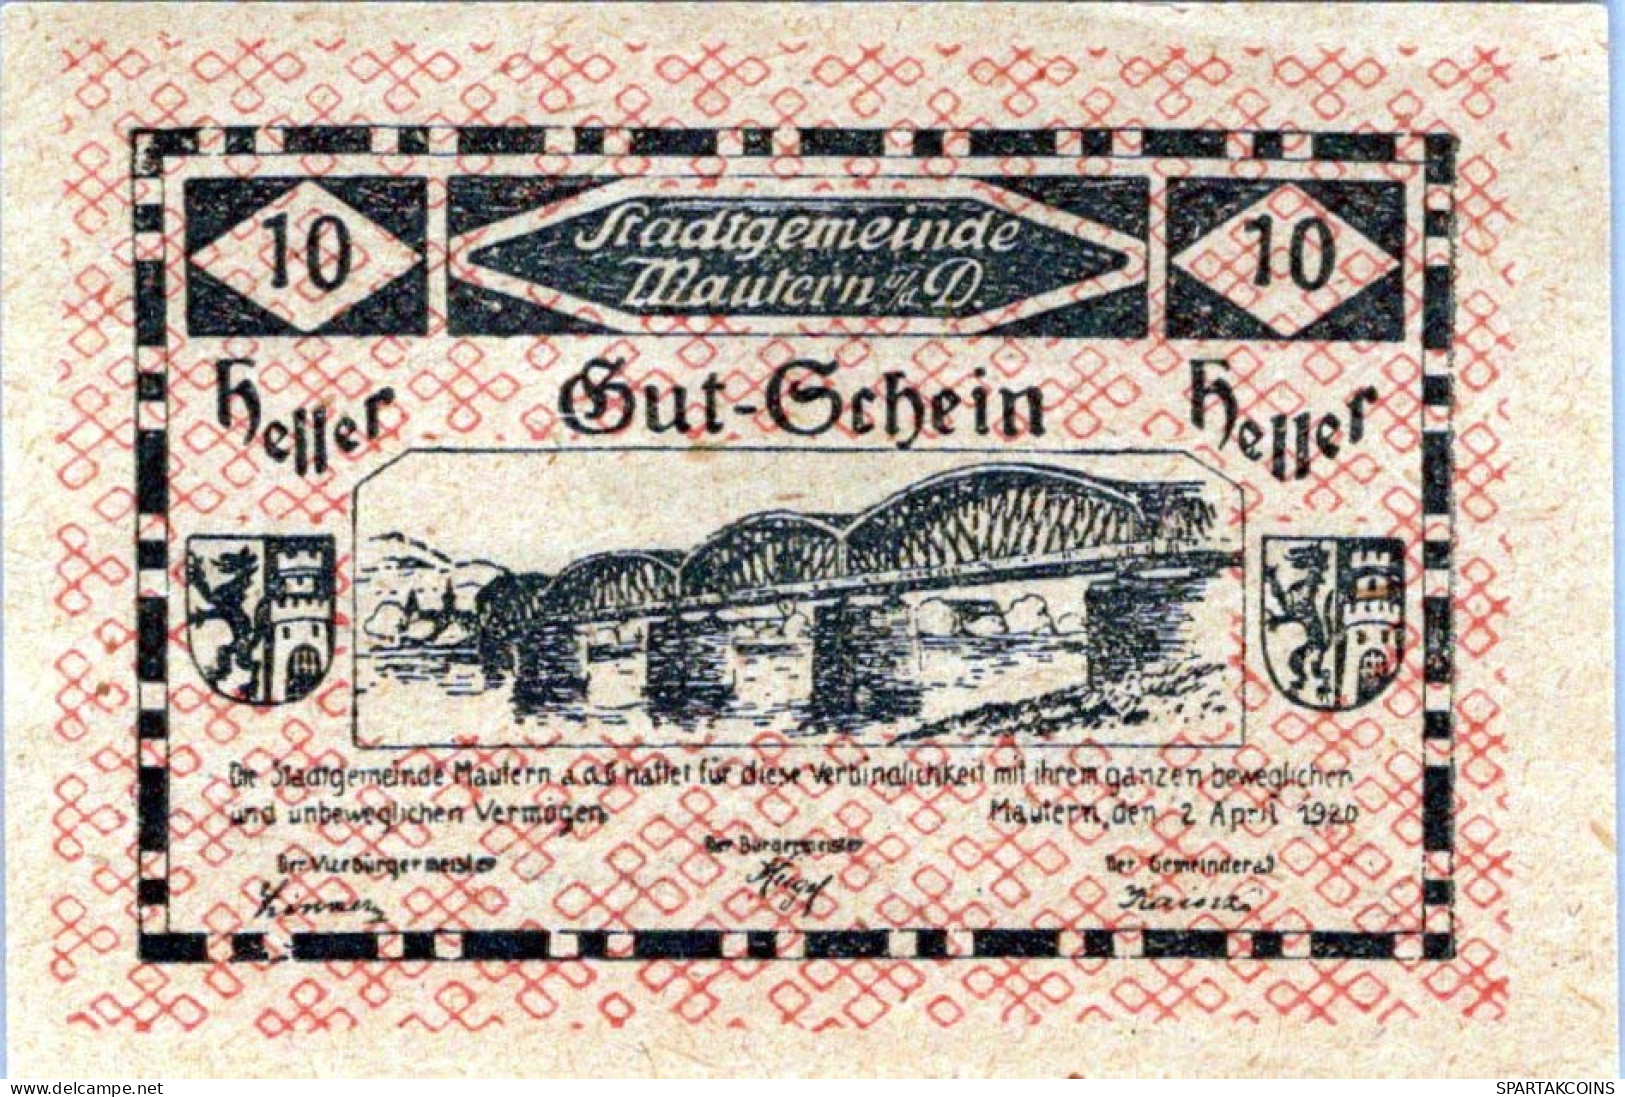 10 HELLER 1920 Stadt MAUTERN AN DER DONAU Niedrigeren Österreich #PD809 - [11] Local Banknote Issues